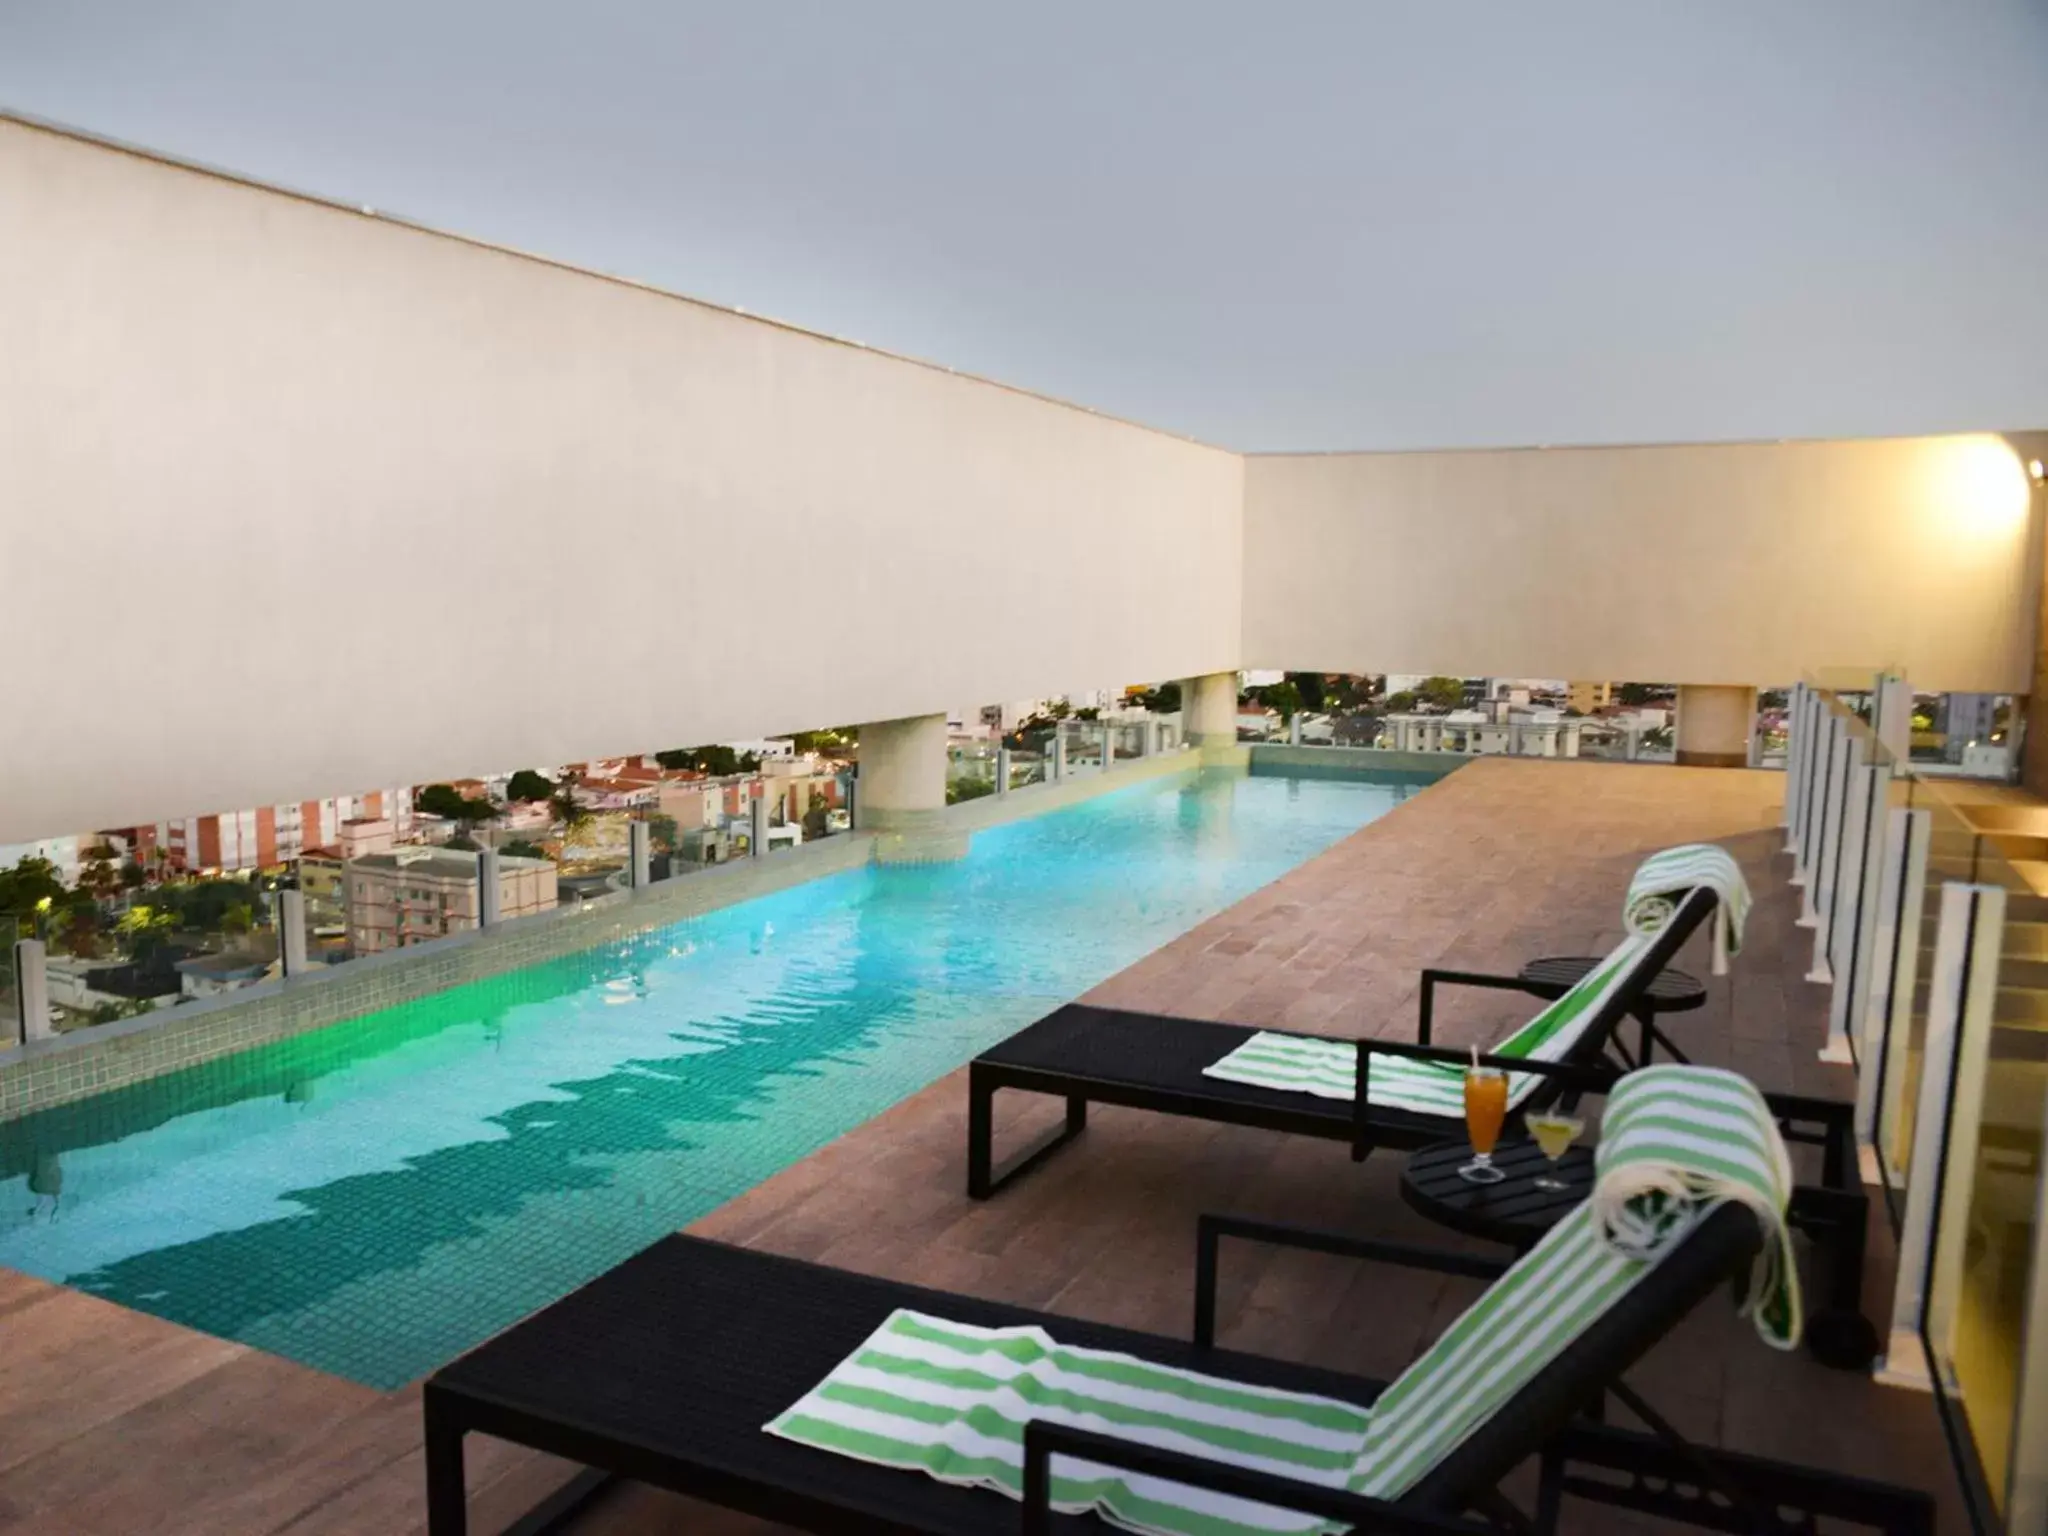 Swimming pool in Dubai Suites